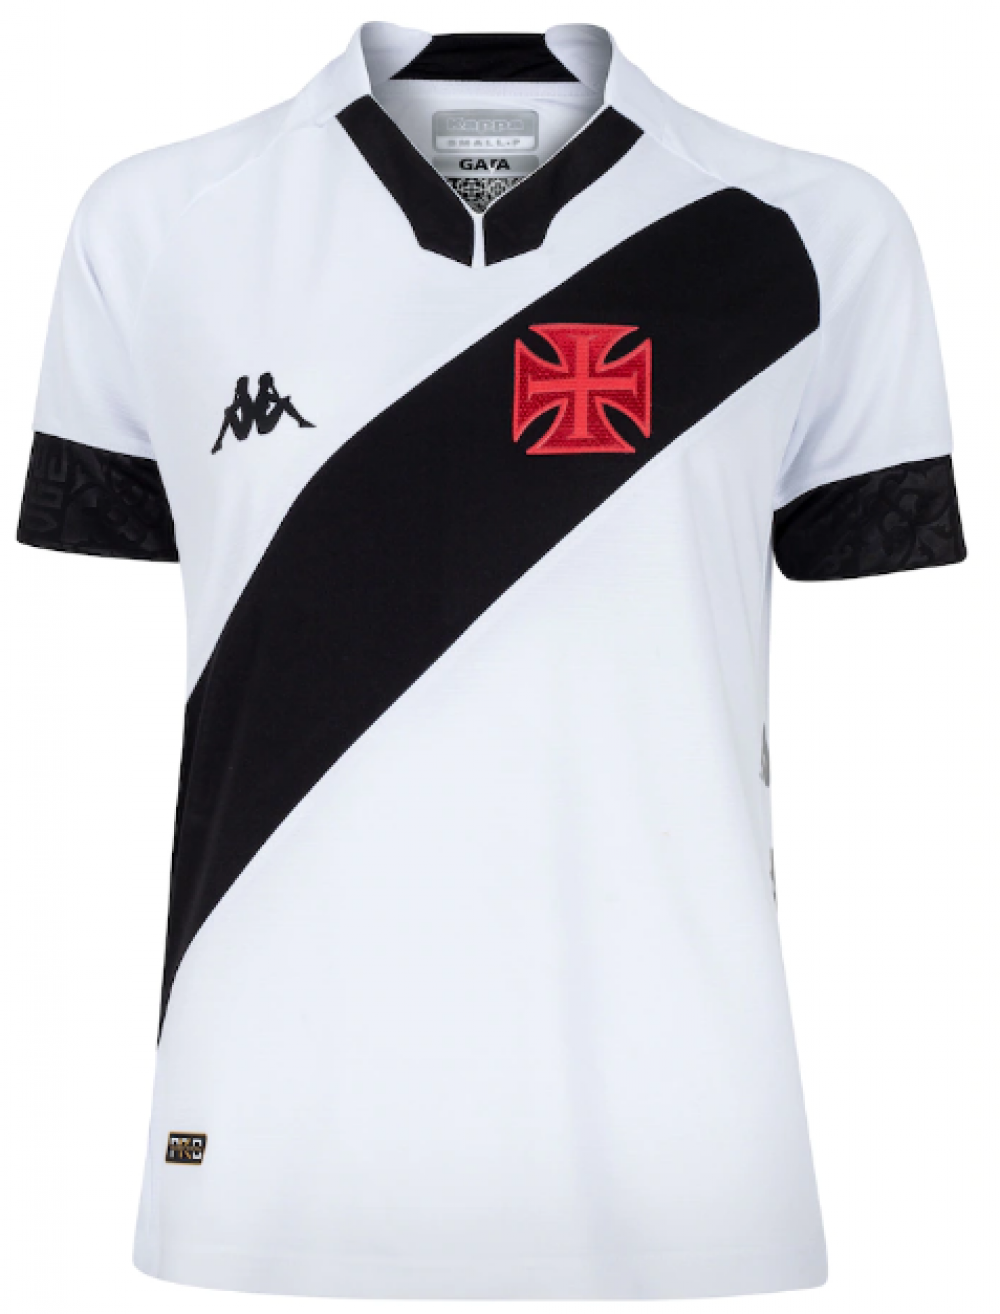 Novas camisas do Torino FC 2021-2022 JOMA » Mantos do Futebol